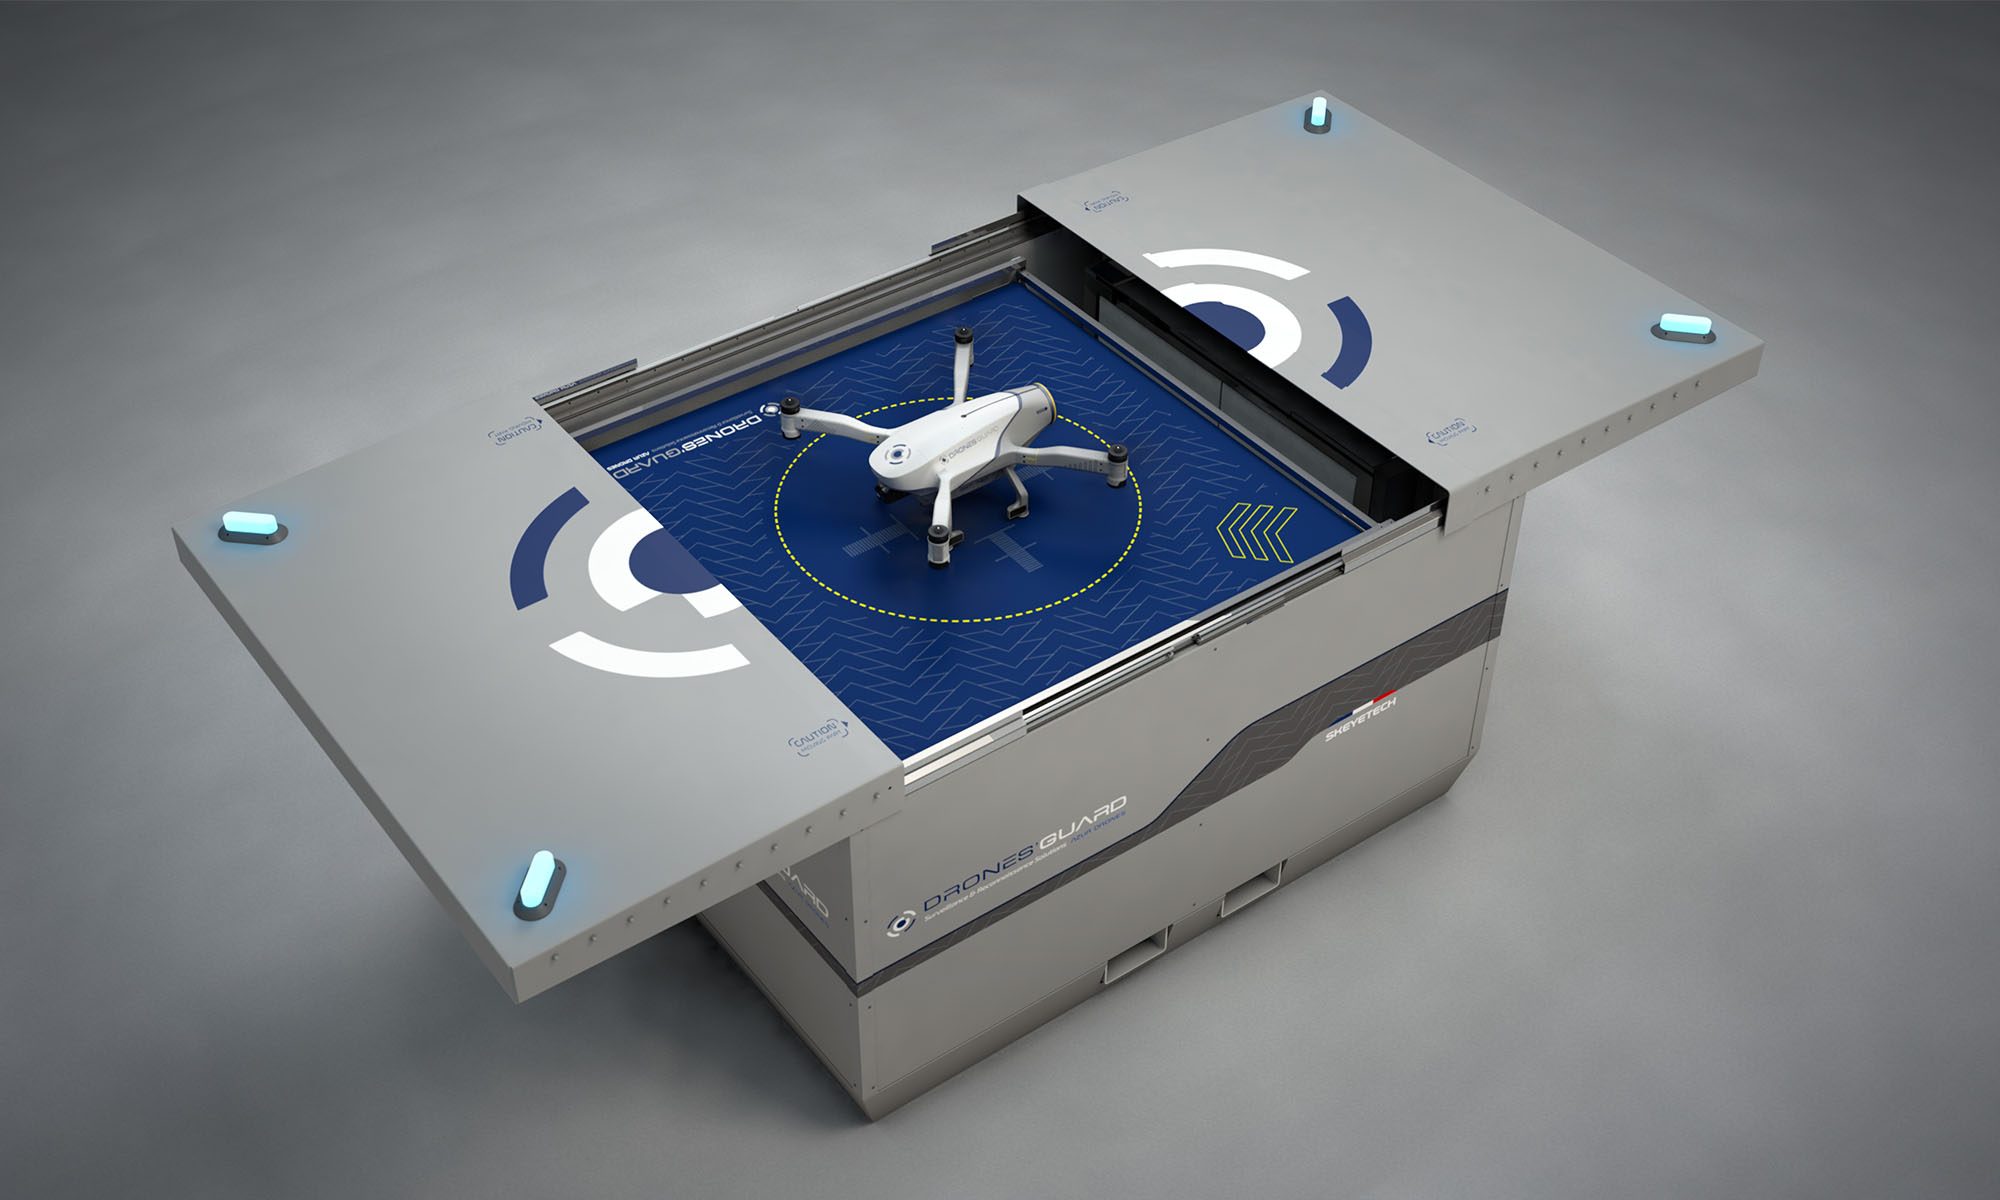 Essais, autorisations de vol et lancement du produit : Le voyage du drone  de Unmanned Life